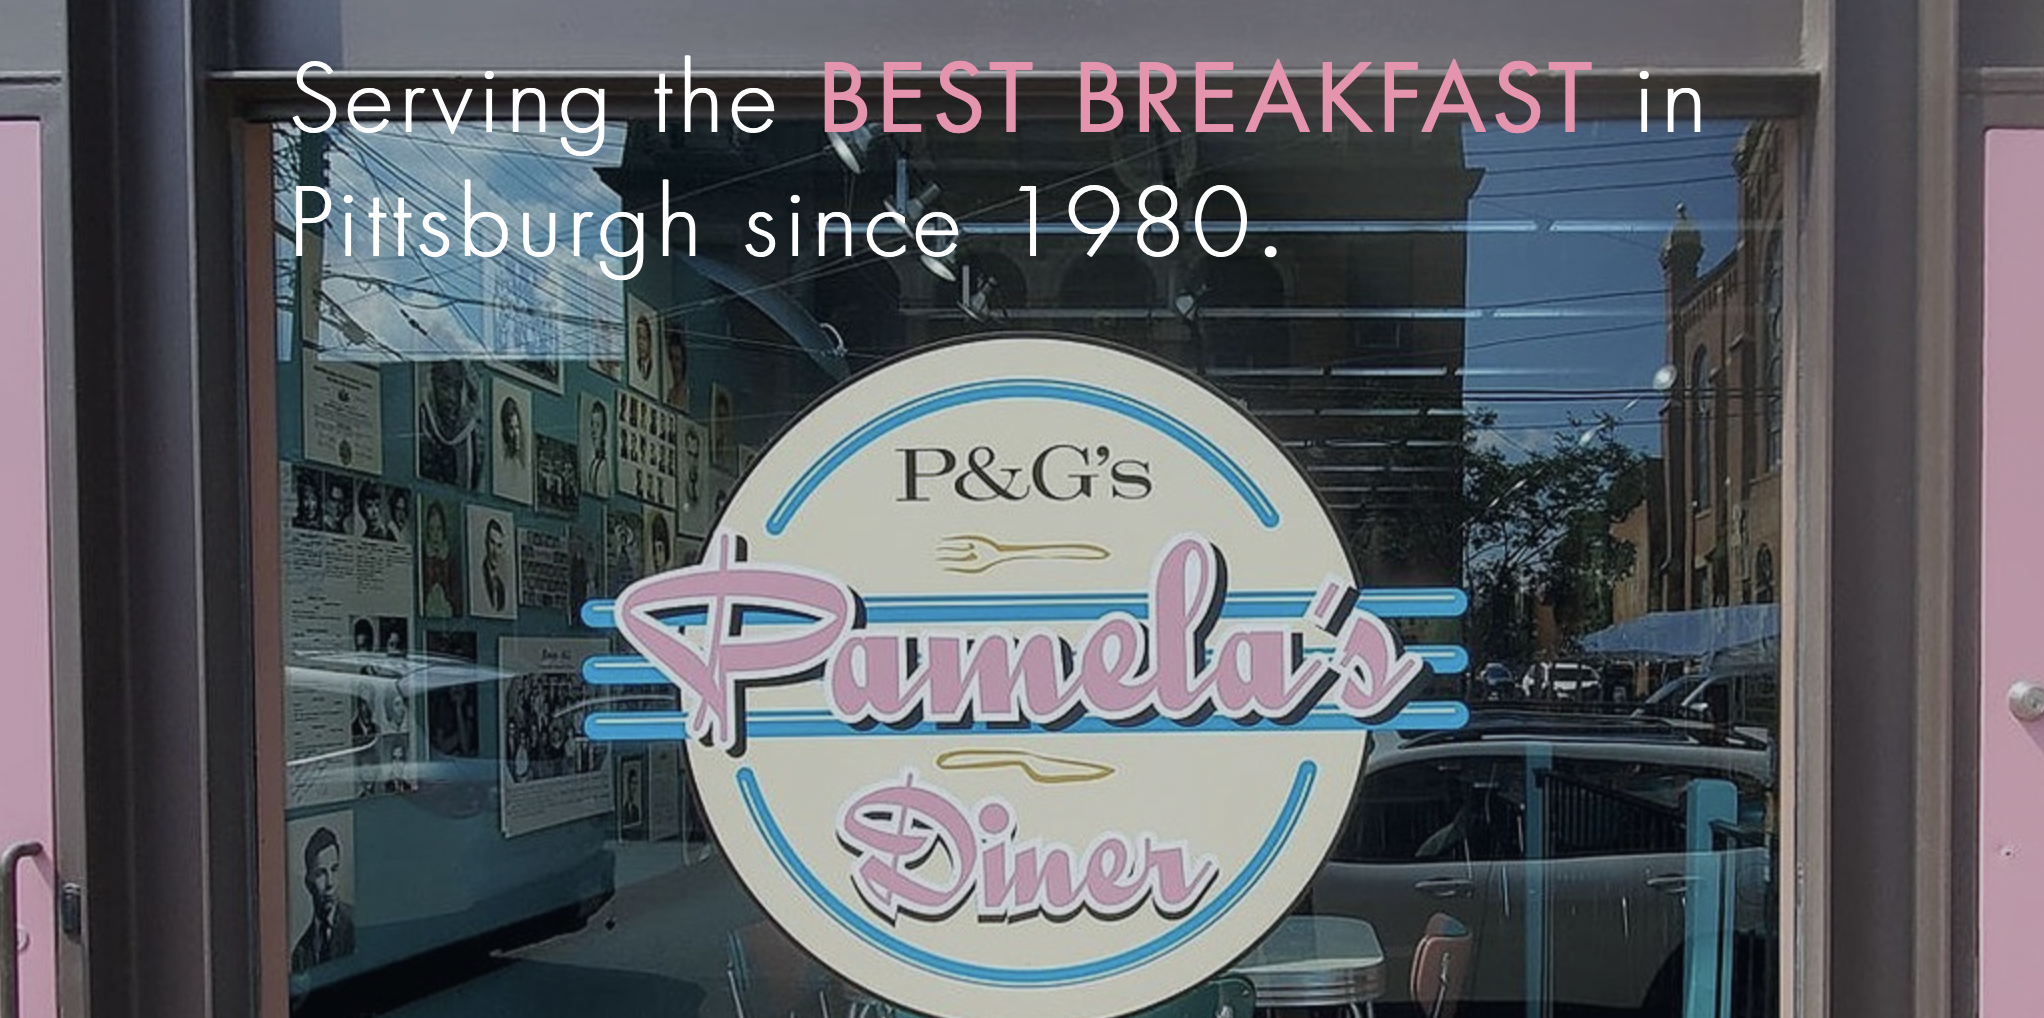 P&G’s Pamela’s Diner